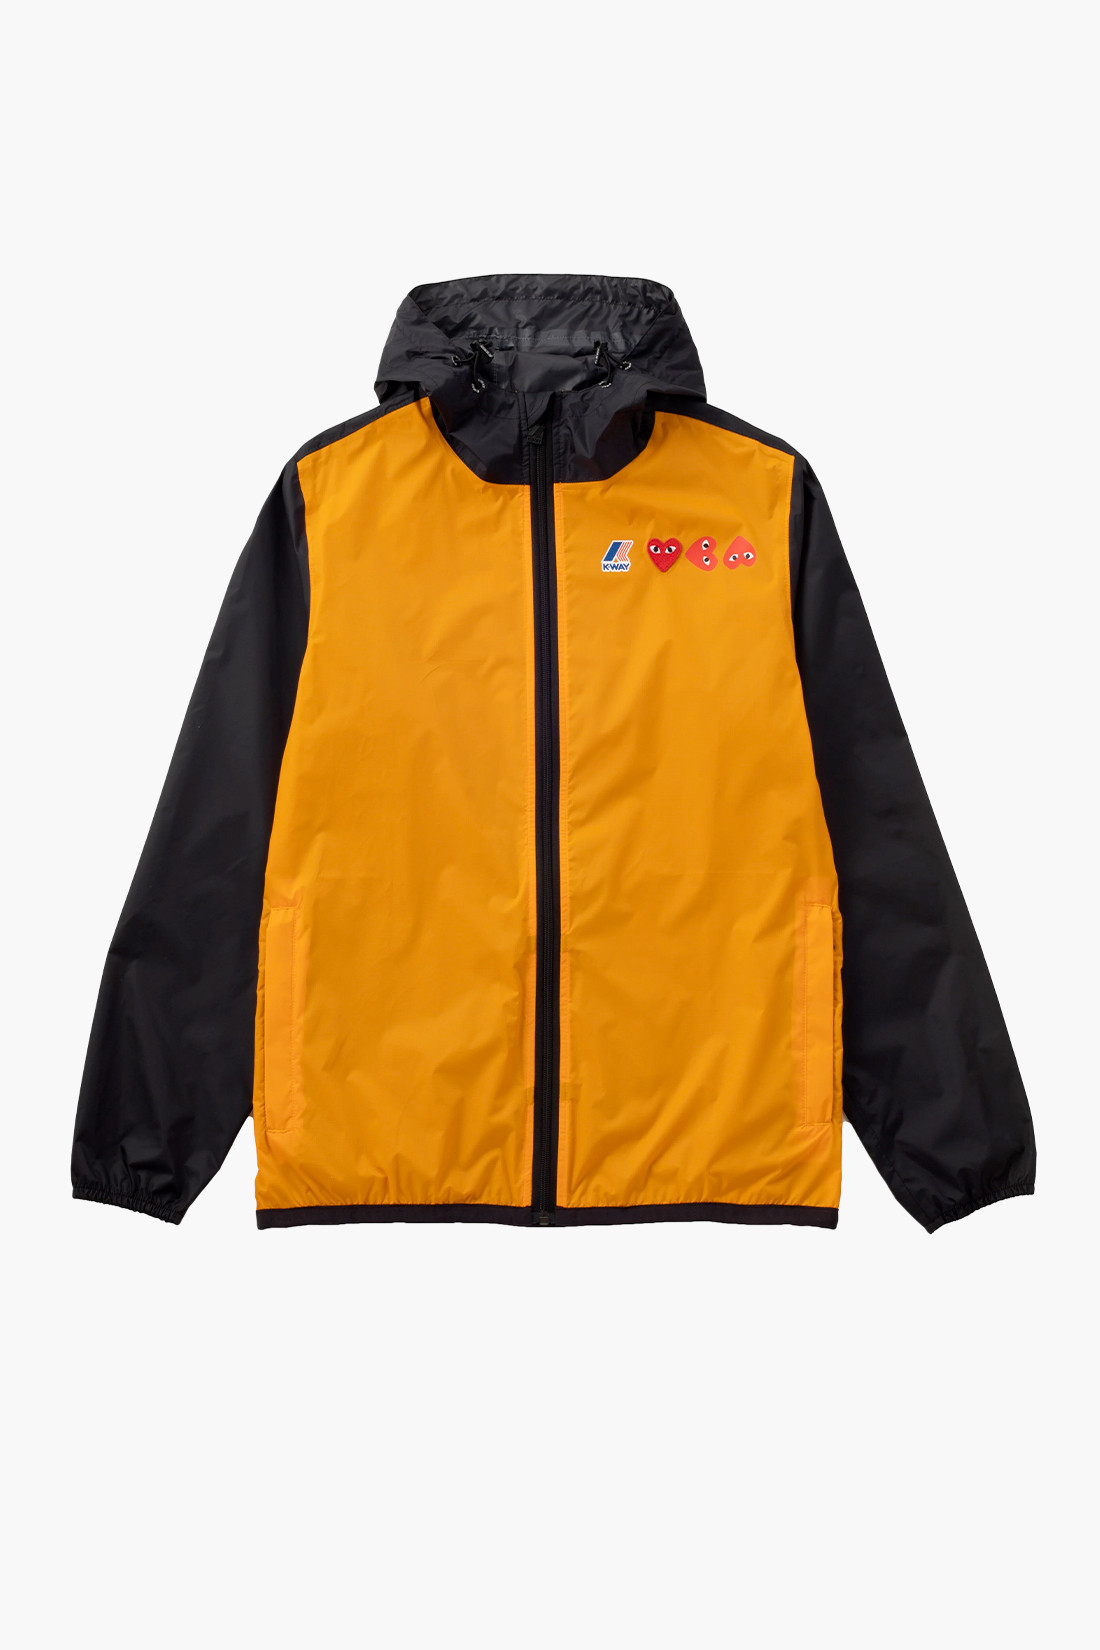 Kway x cdg K-way hoodie full zip Orange/black - GRADUATE STORE | FR